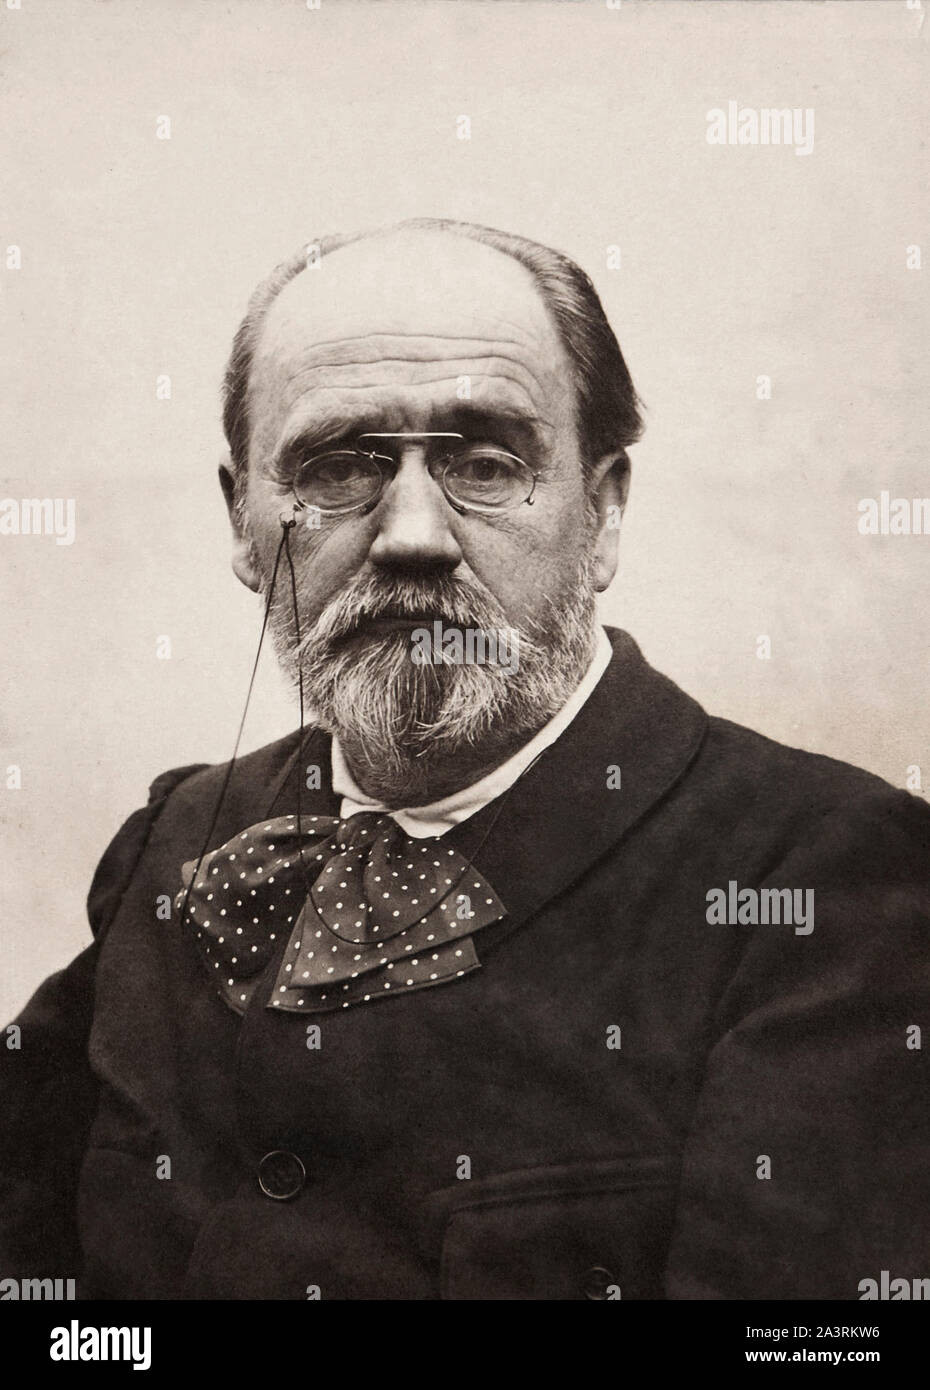 Edouard Emile Zola Charles Antoine (1840 - 1902) était un écrivain français, journaliste et homme politique. L'un des plus importants représentants du réalisme Banque D'Images